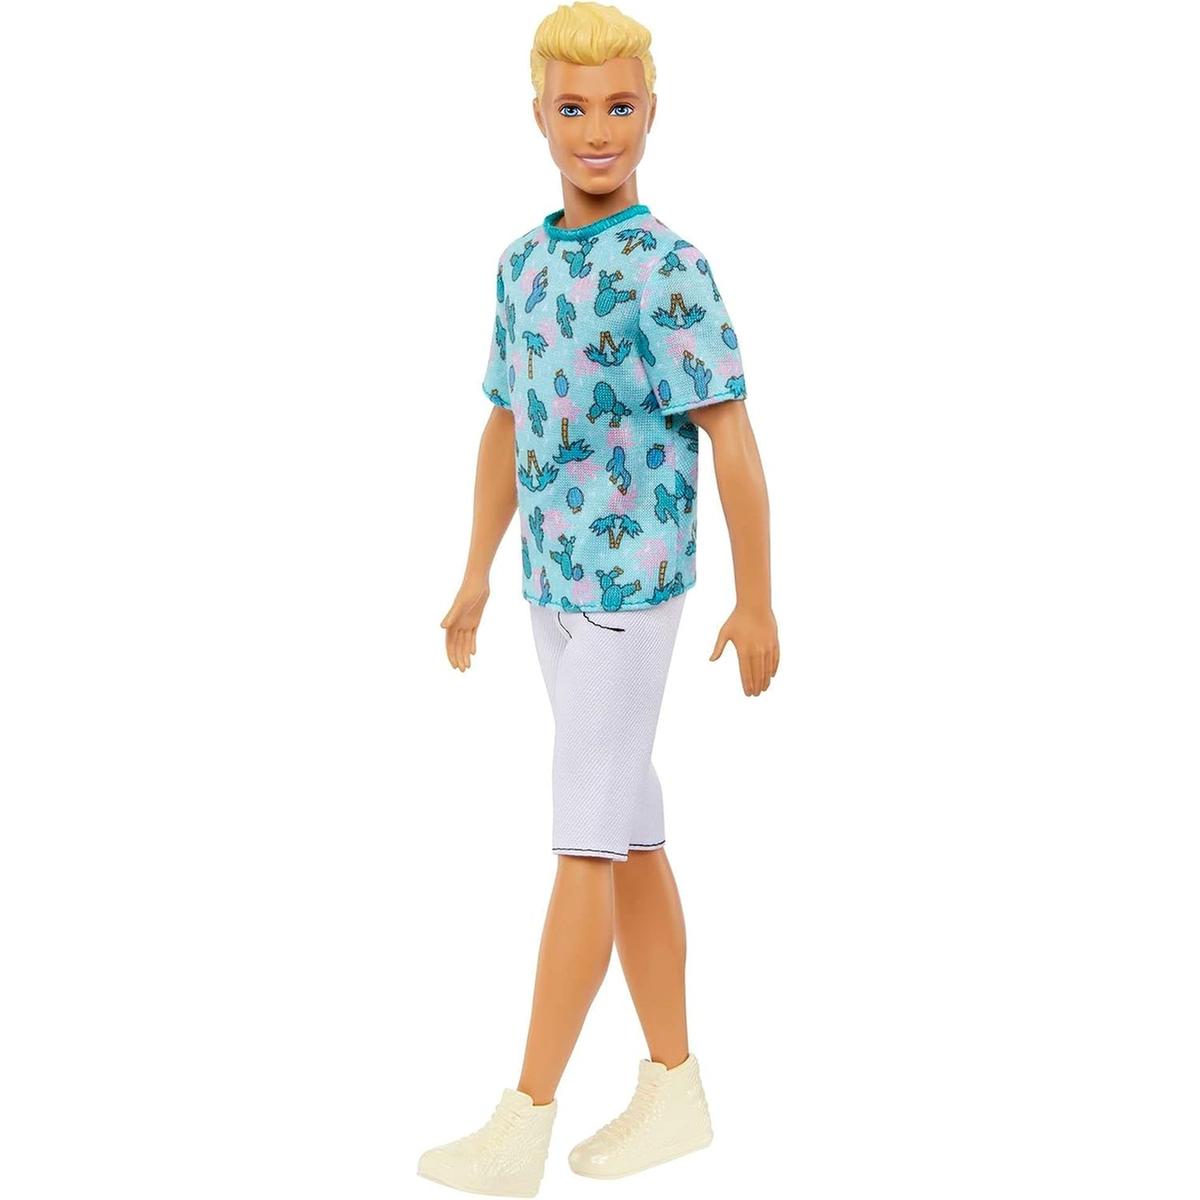 Mattel - Boneco Ken Fashionistas com cabelo loiro e roupa de cactos ㅤ, FASHIONISTAS